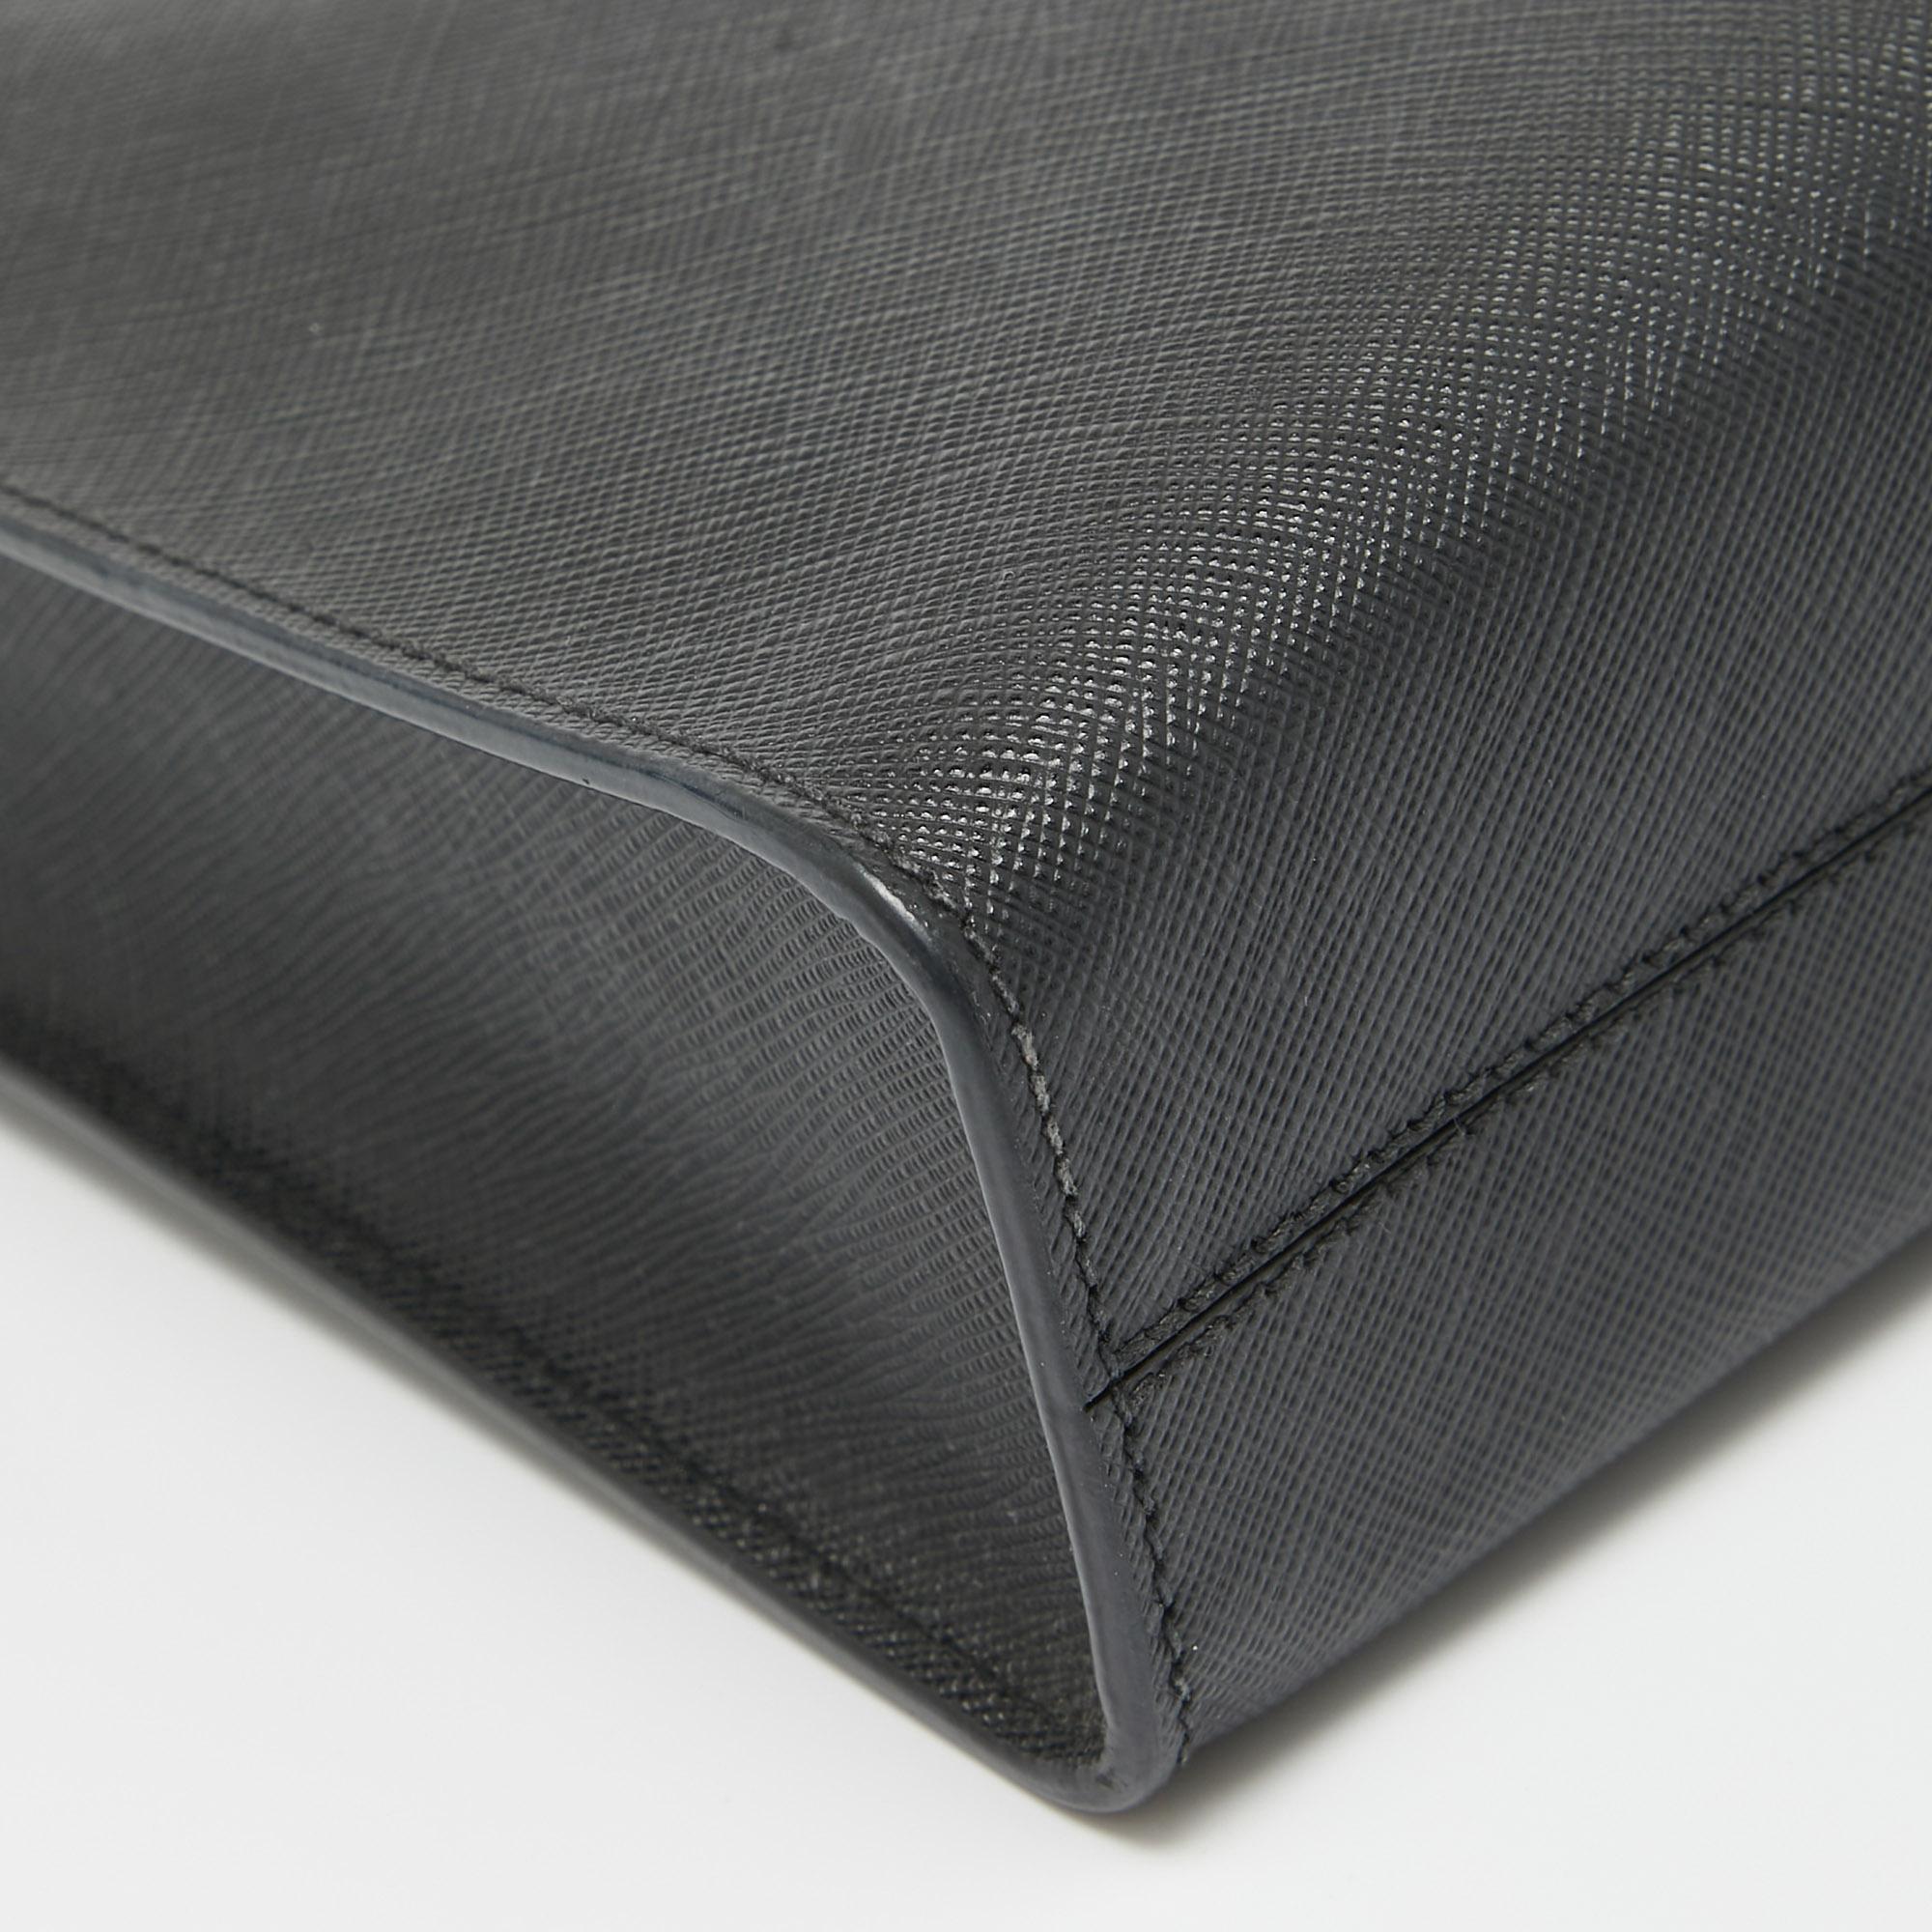 Prada Black Saffiano Lux Leather Small Tote For Sale 5